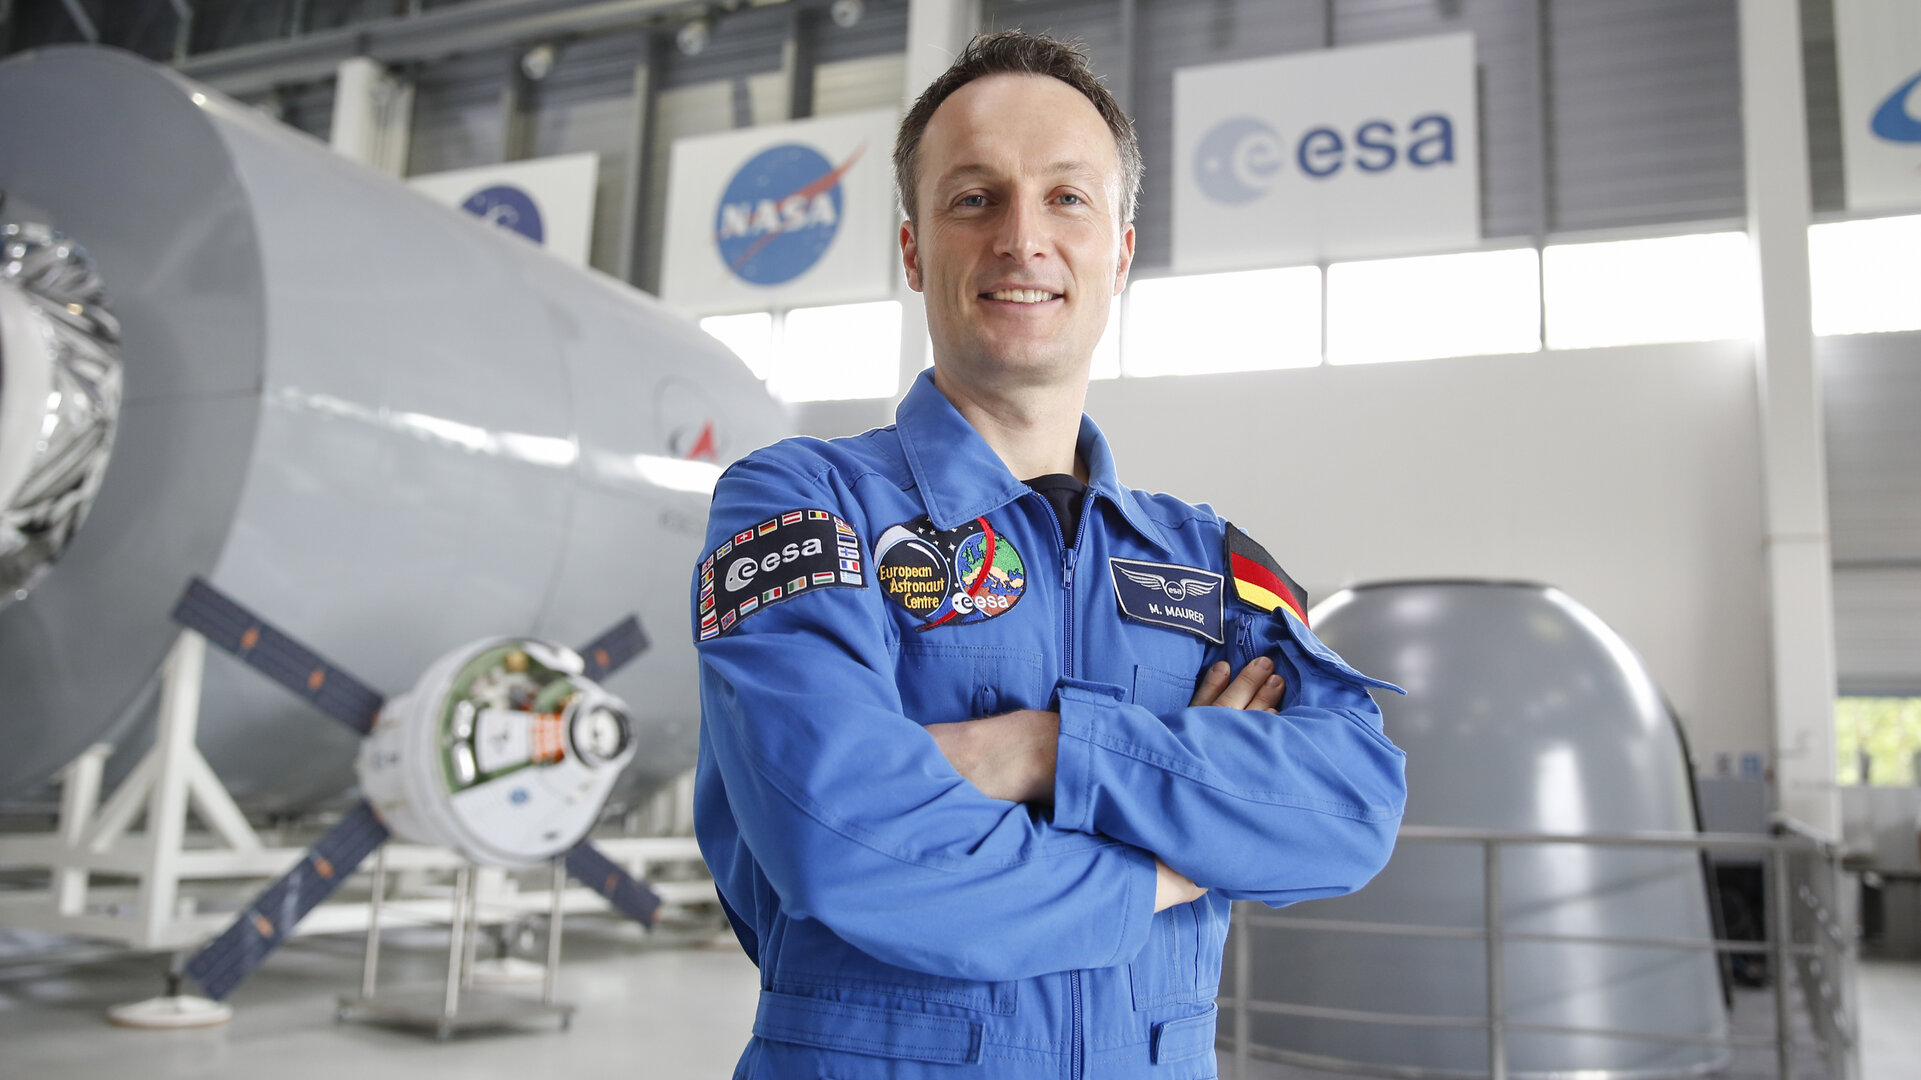 Der Saarländer Dr. Matthias Maurer wurde im Februar 2017 in das Astronautenteam der ESA aufgenommen.